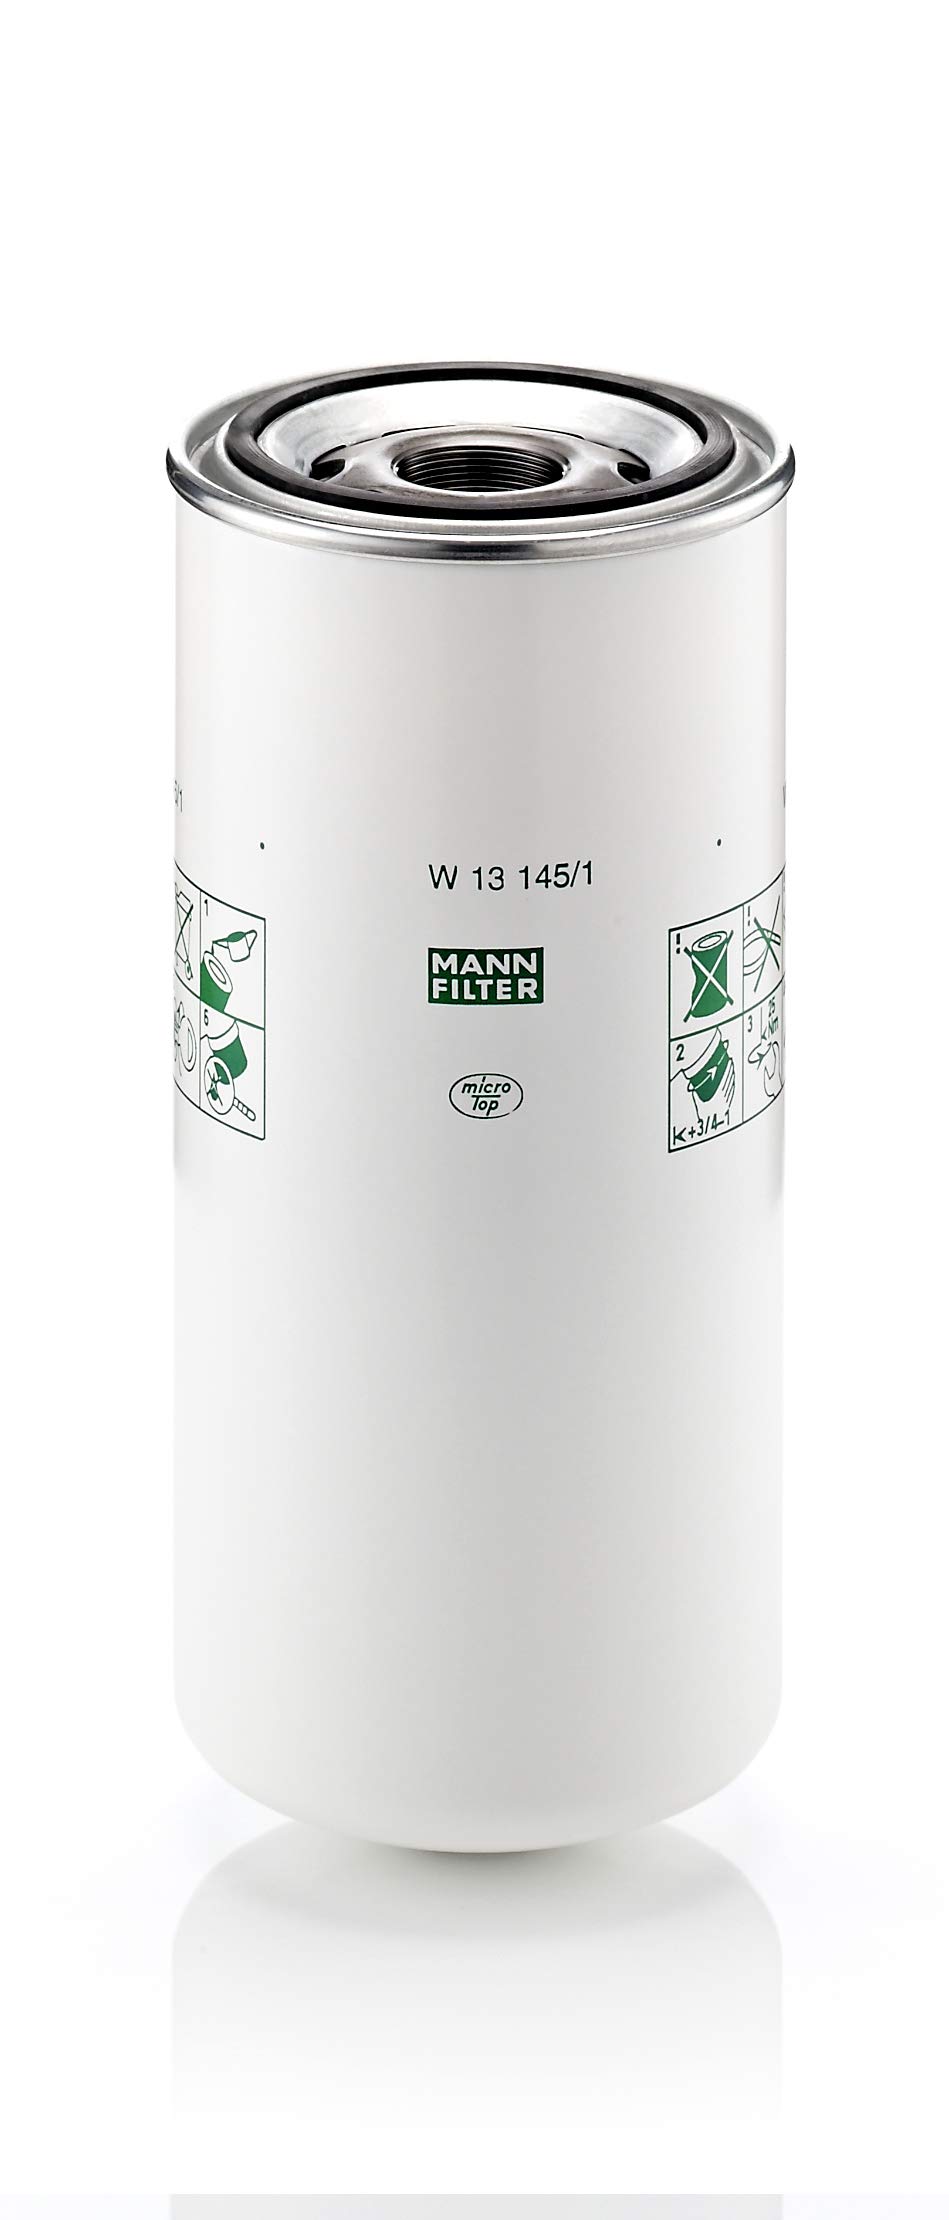 MANN-FILTER W 13 145/1 Ölfilter – Für PKW und Nutzfahrzeuge von MANN-FILTER